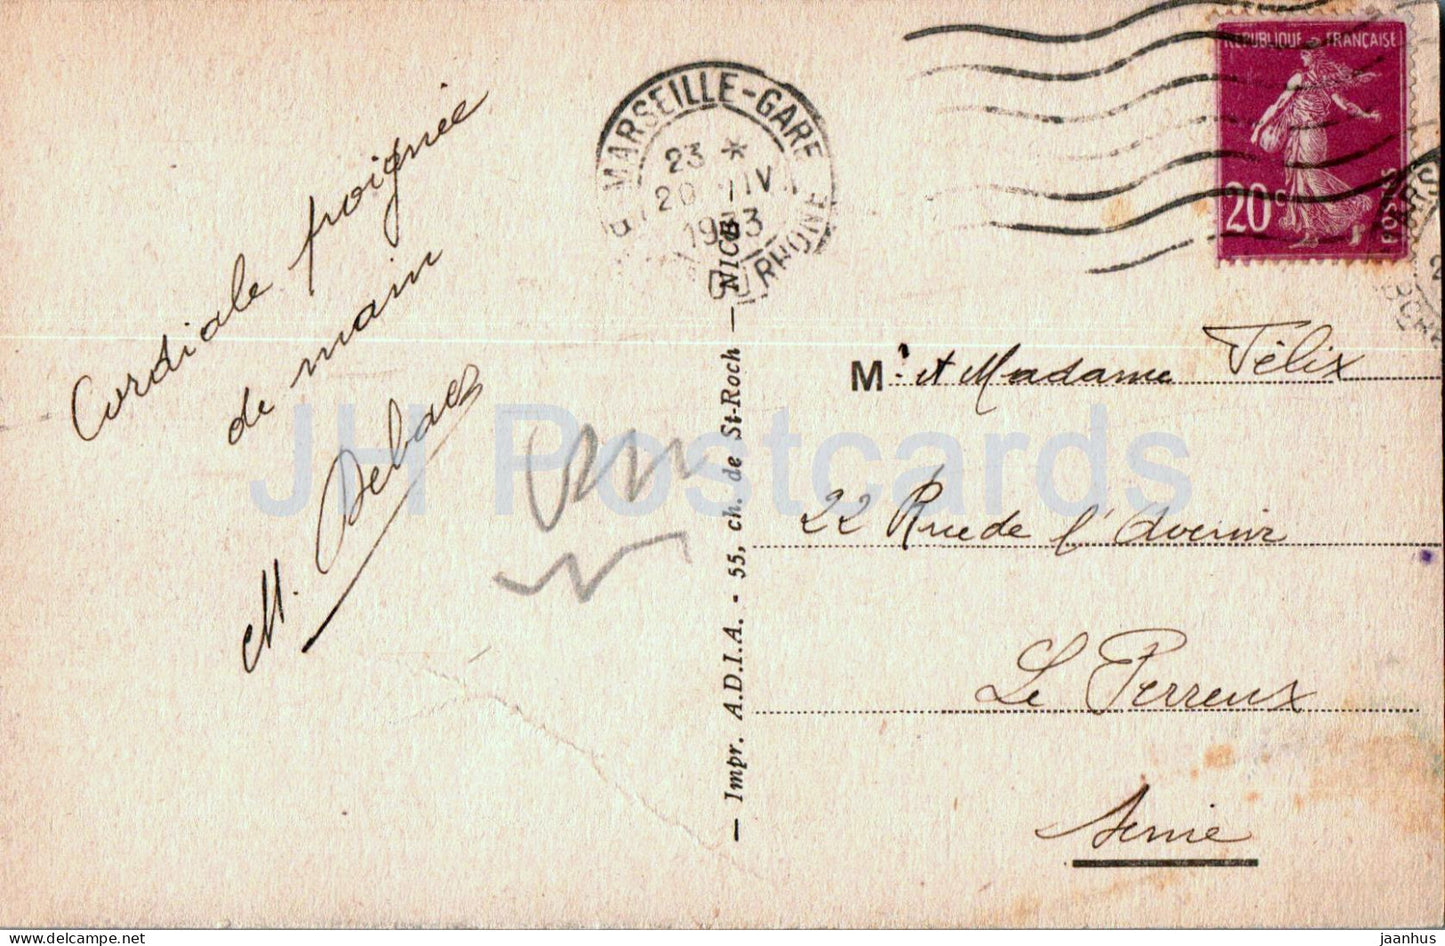 Marseille - Vue generale des Quais de la Joliette - 807 - alte Postkarte - 1933 - Frankreich - gebraucht